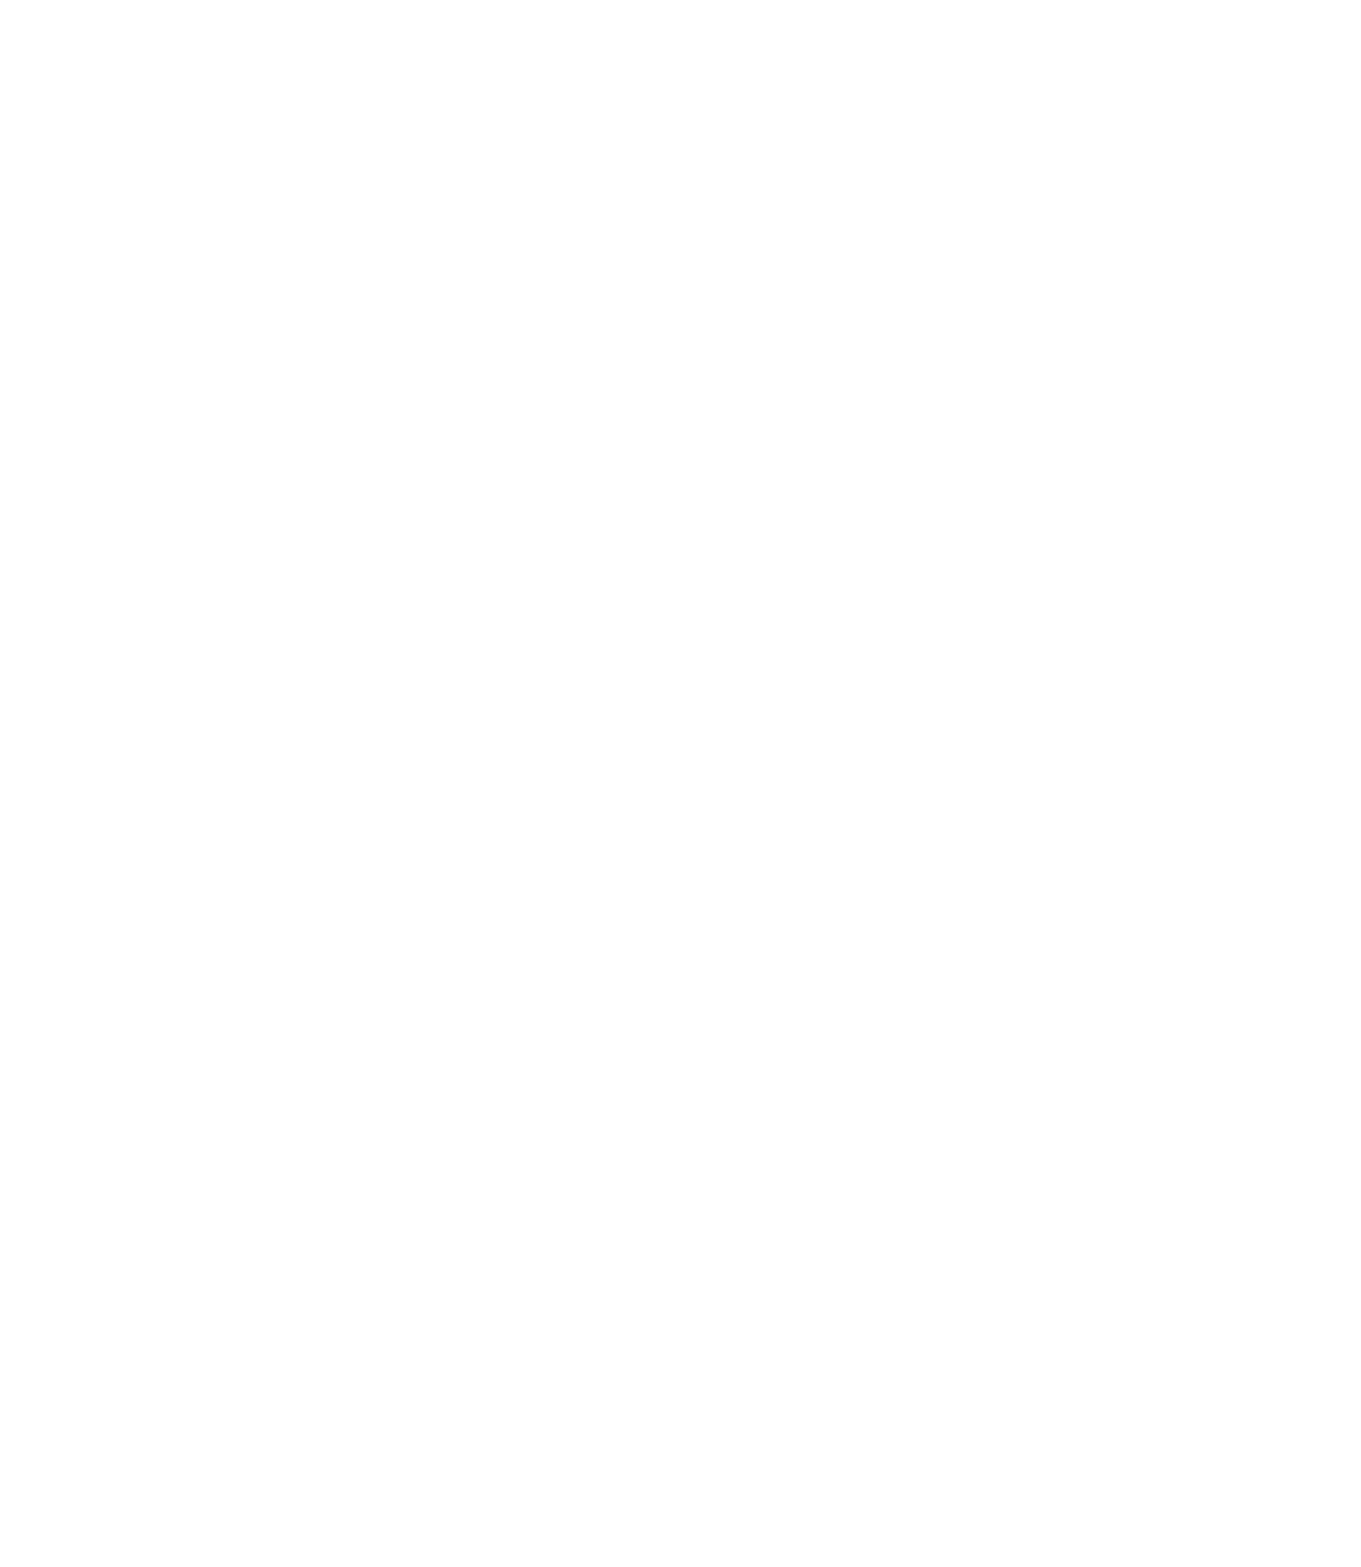 QUALCOMM logo pour fonds sombres (PNG transparent)